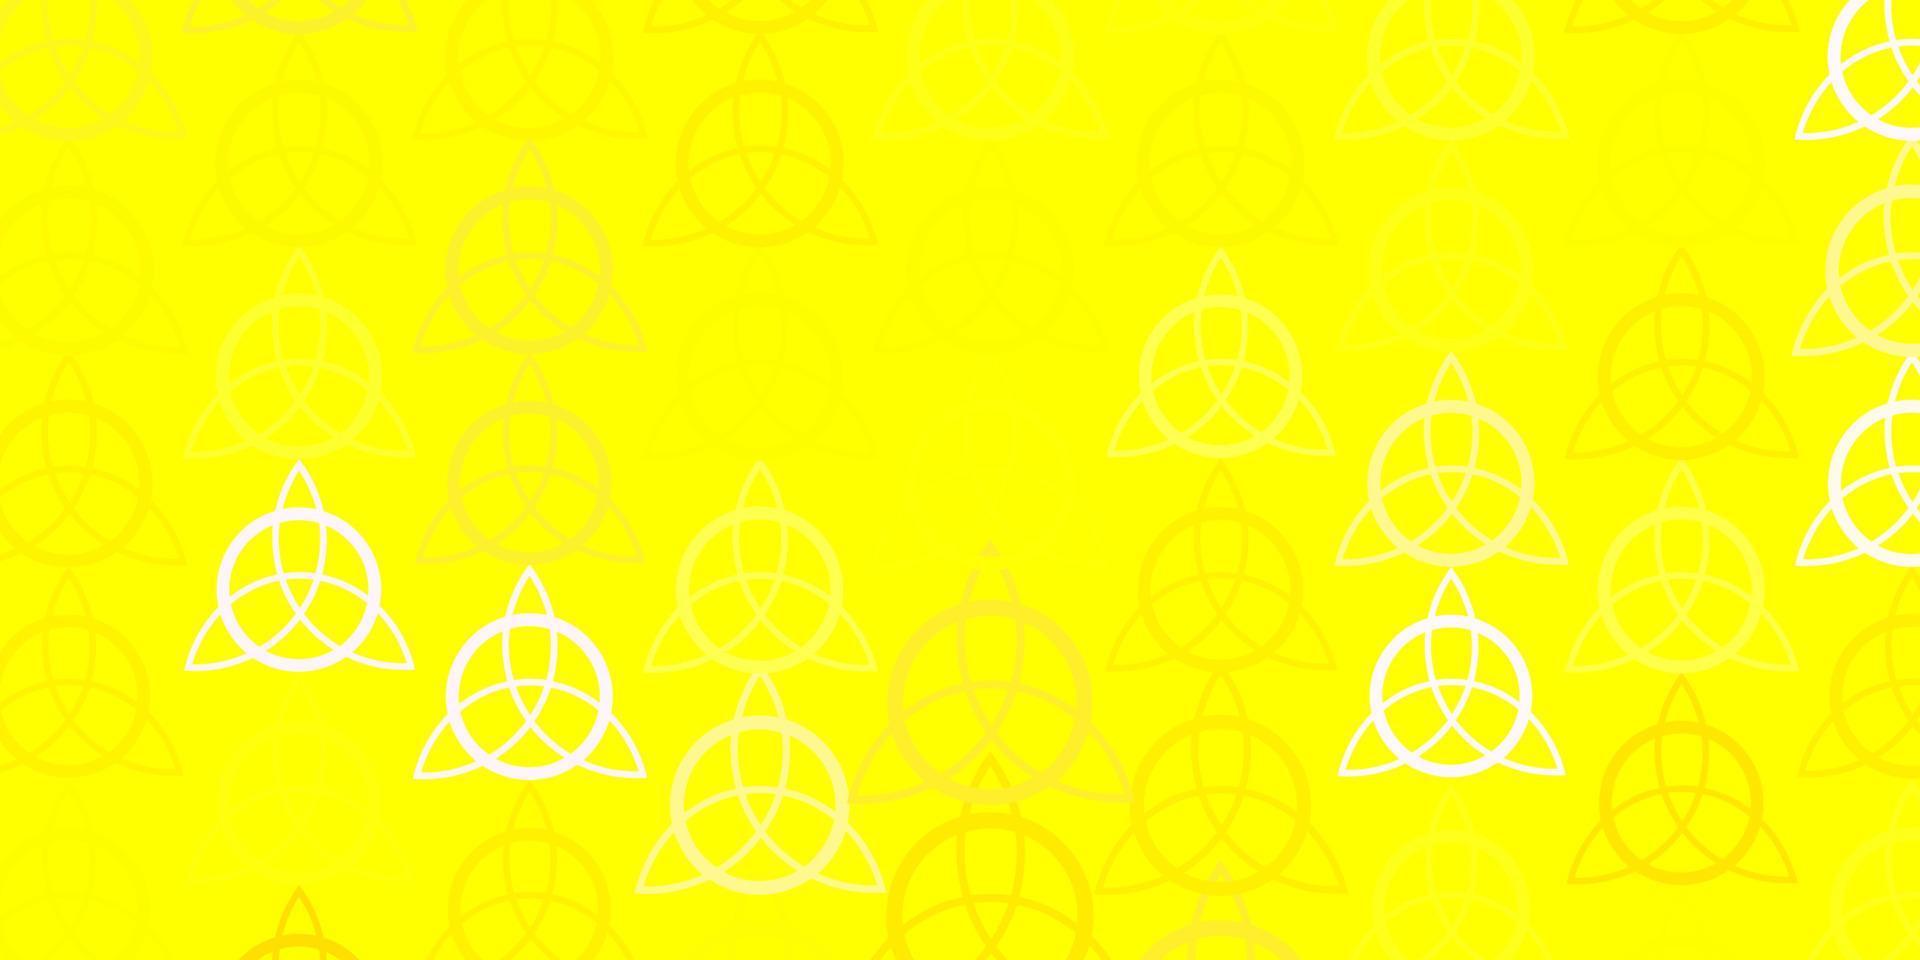 toile de fond de vecteur rose clair, jaune avec des symboles mystérieux.